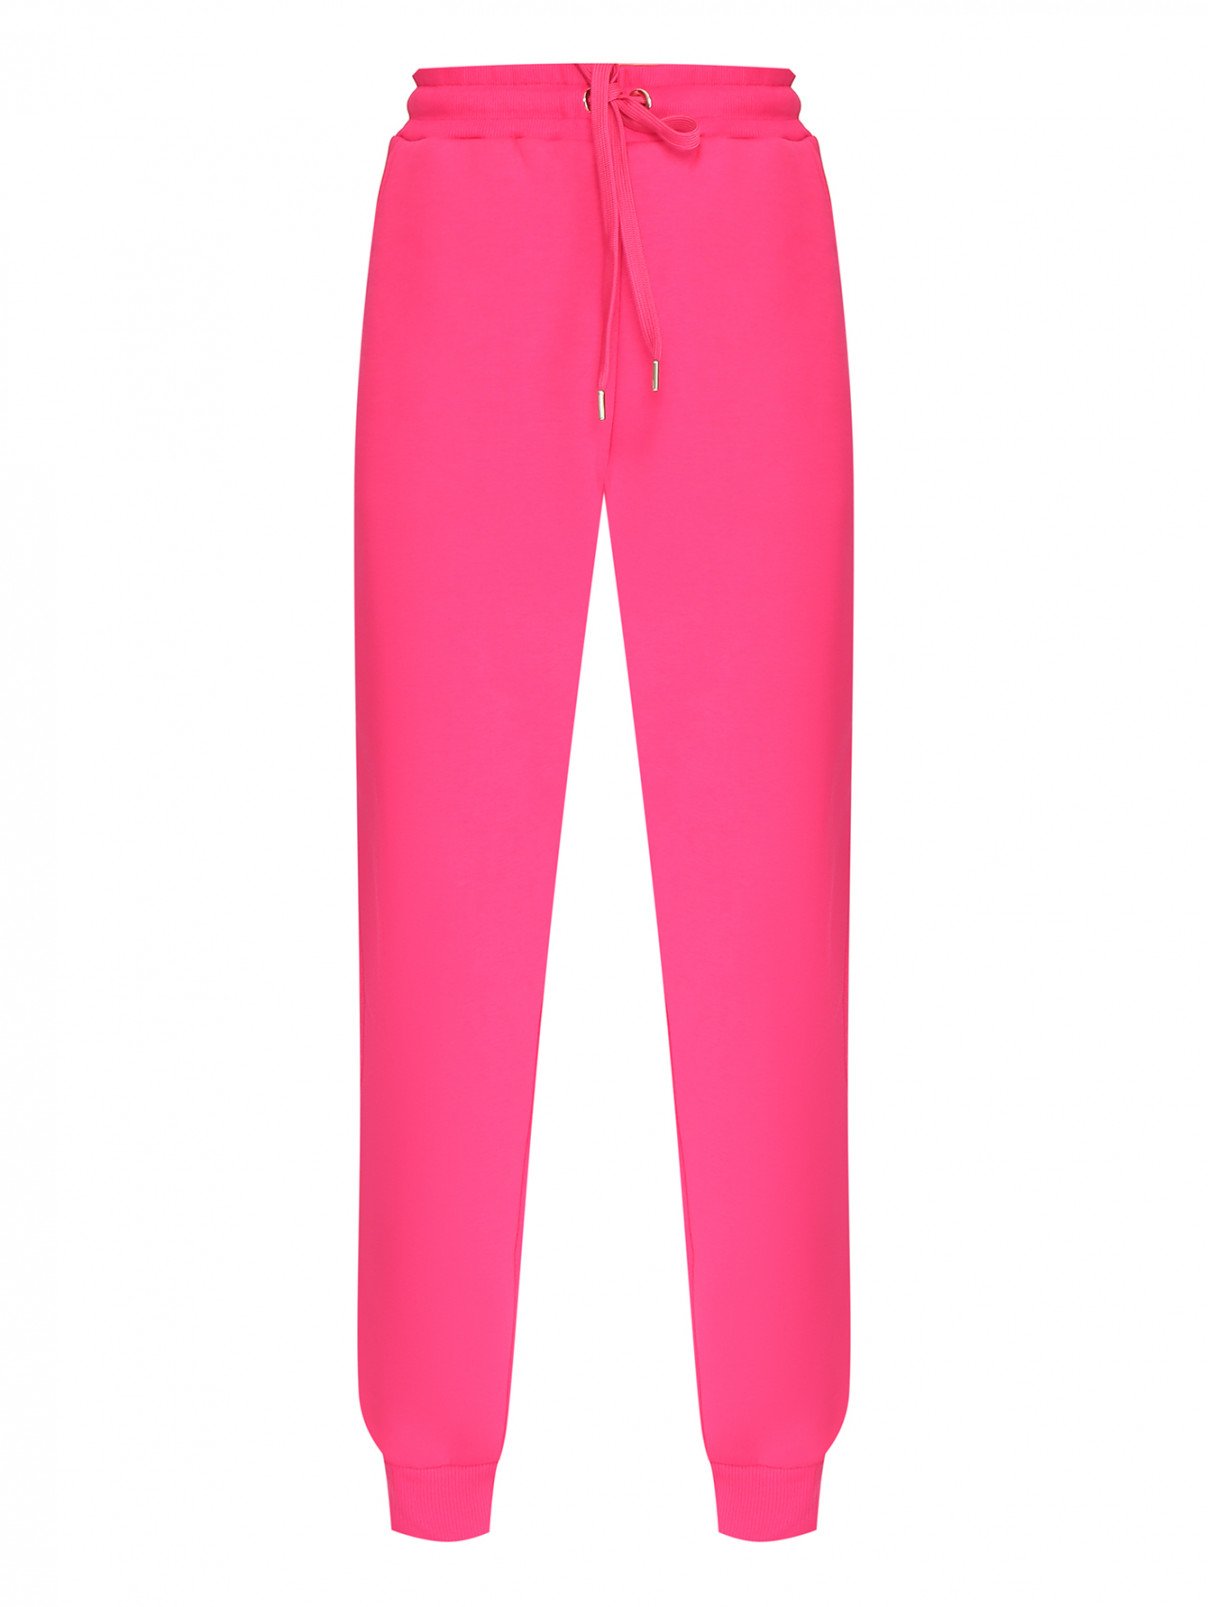 Трикотажные брюки-джоггеры с лампасами Luisa Spagnoli  –  Общий вид  – Цвет:  Розовый